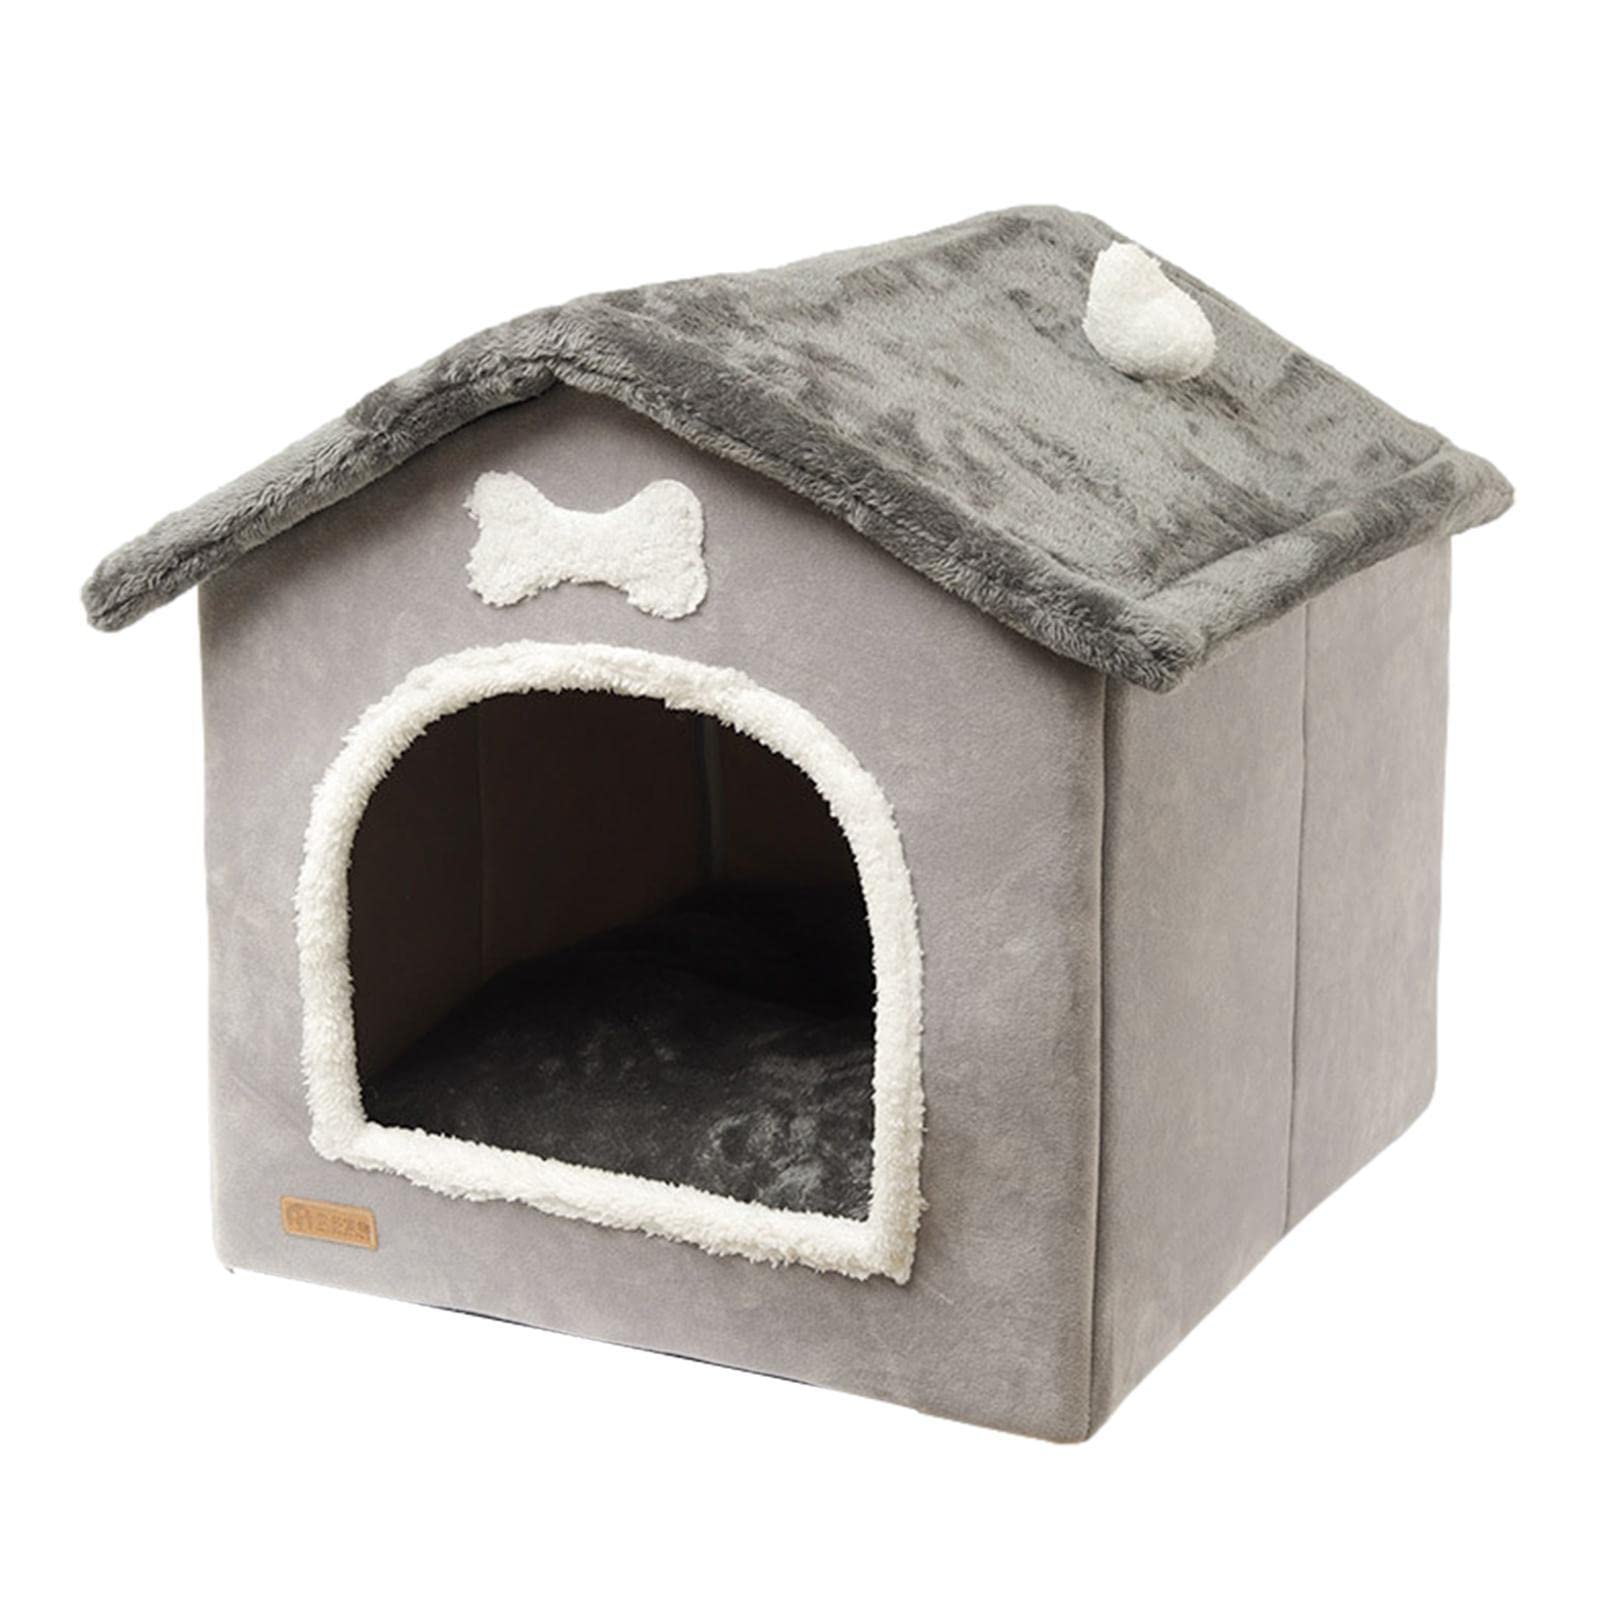 Winterwarmes Katzenhaus | Indoor Hundehütte Warmes Hundebett,Plüsch Pet House Hundehütte für Katzen mit abnehmbarem Kissen, geeignet für kleine und mittelgroße Hunde und Katzen Delr